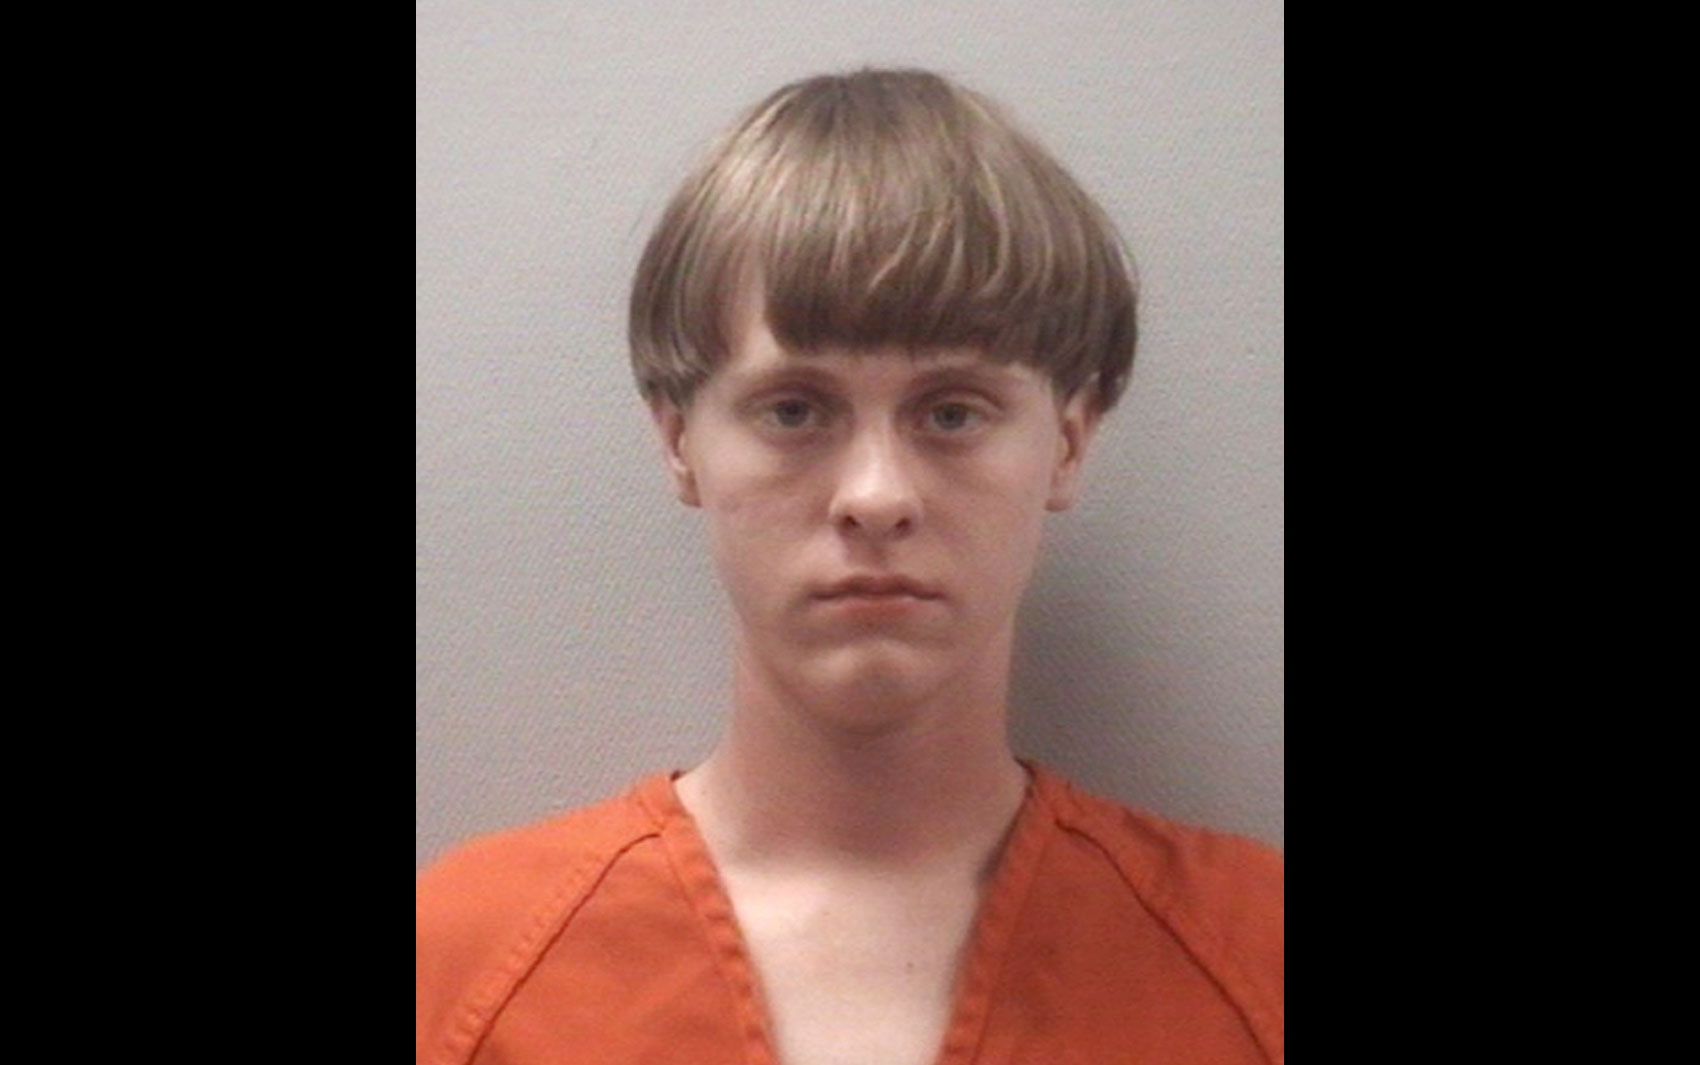 Foto de registro prisional feito em abril deste ano mostra o suspeito do ataque à igreja em Charleston, Dylann Roof, de 21 anos